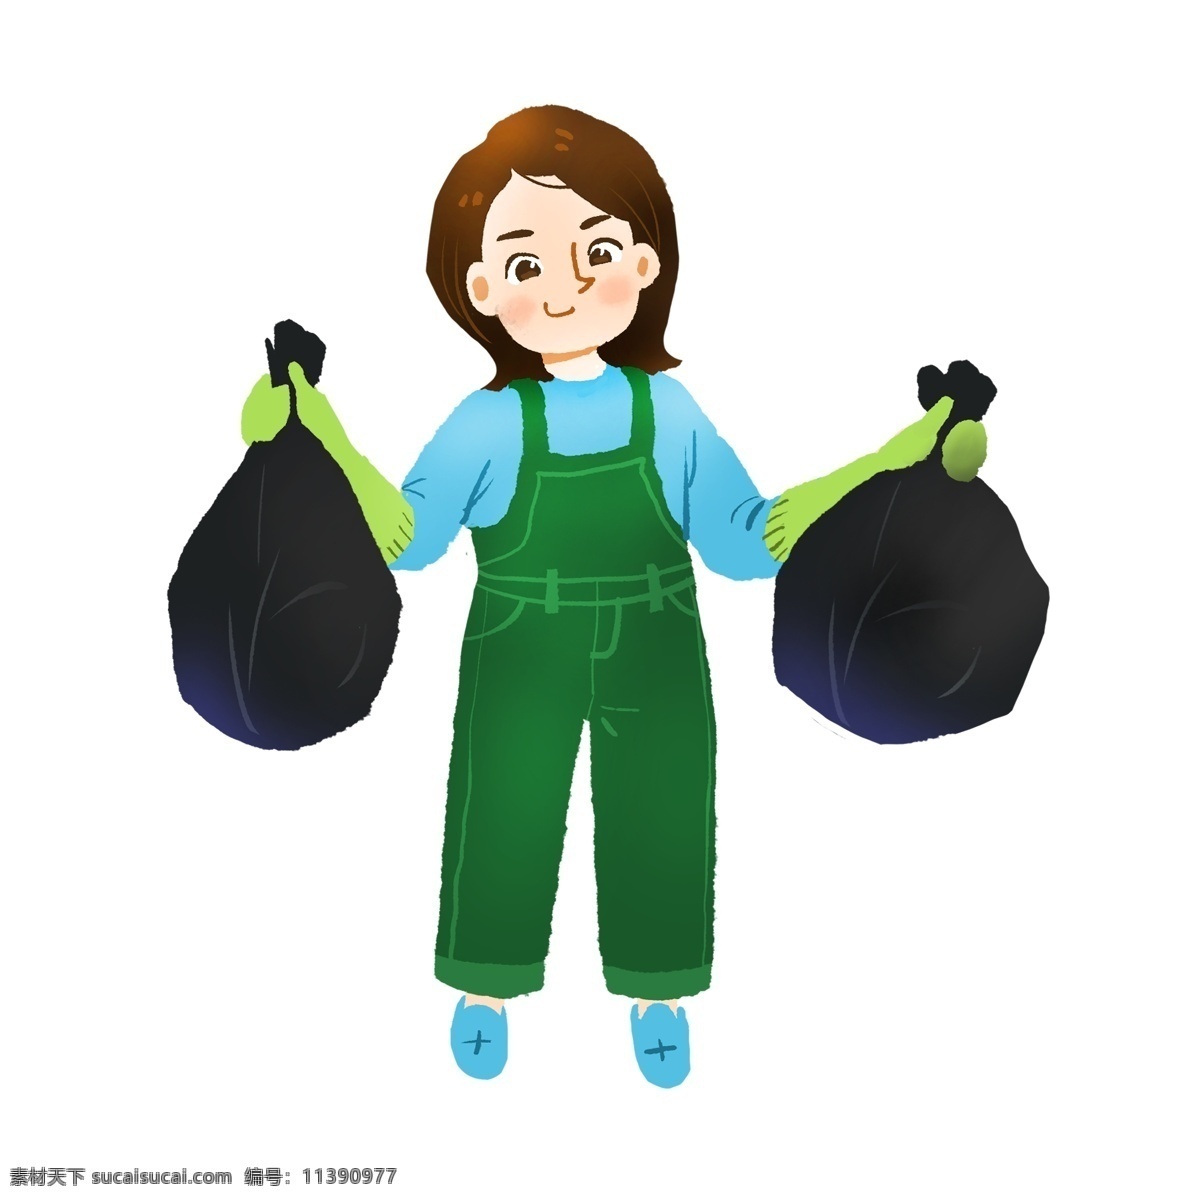 爱护 环境 垃圾 分类 可回收 女孩扔垃圾 扔垃圾 整理垃圾 垃圾分类 回收 绿色